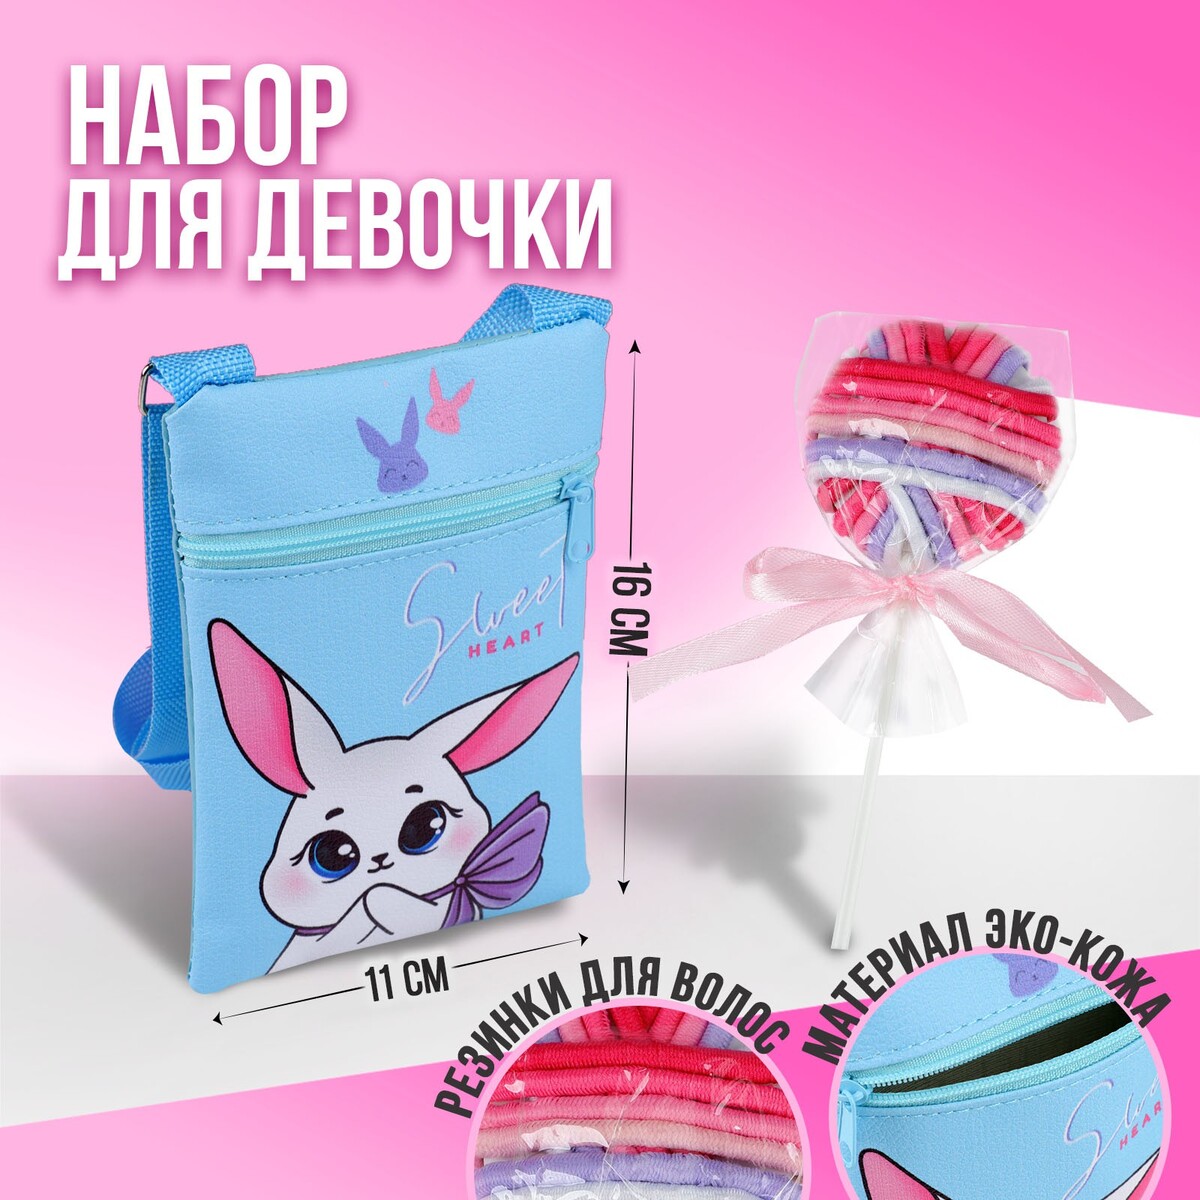 Набор для девочки белый зайчик: сумка и резинки для волос, цвет голубой/розовый развивающая игрушка berttoys зайчик няня pro память 8gb белый шум песни и сказки розовый